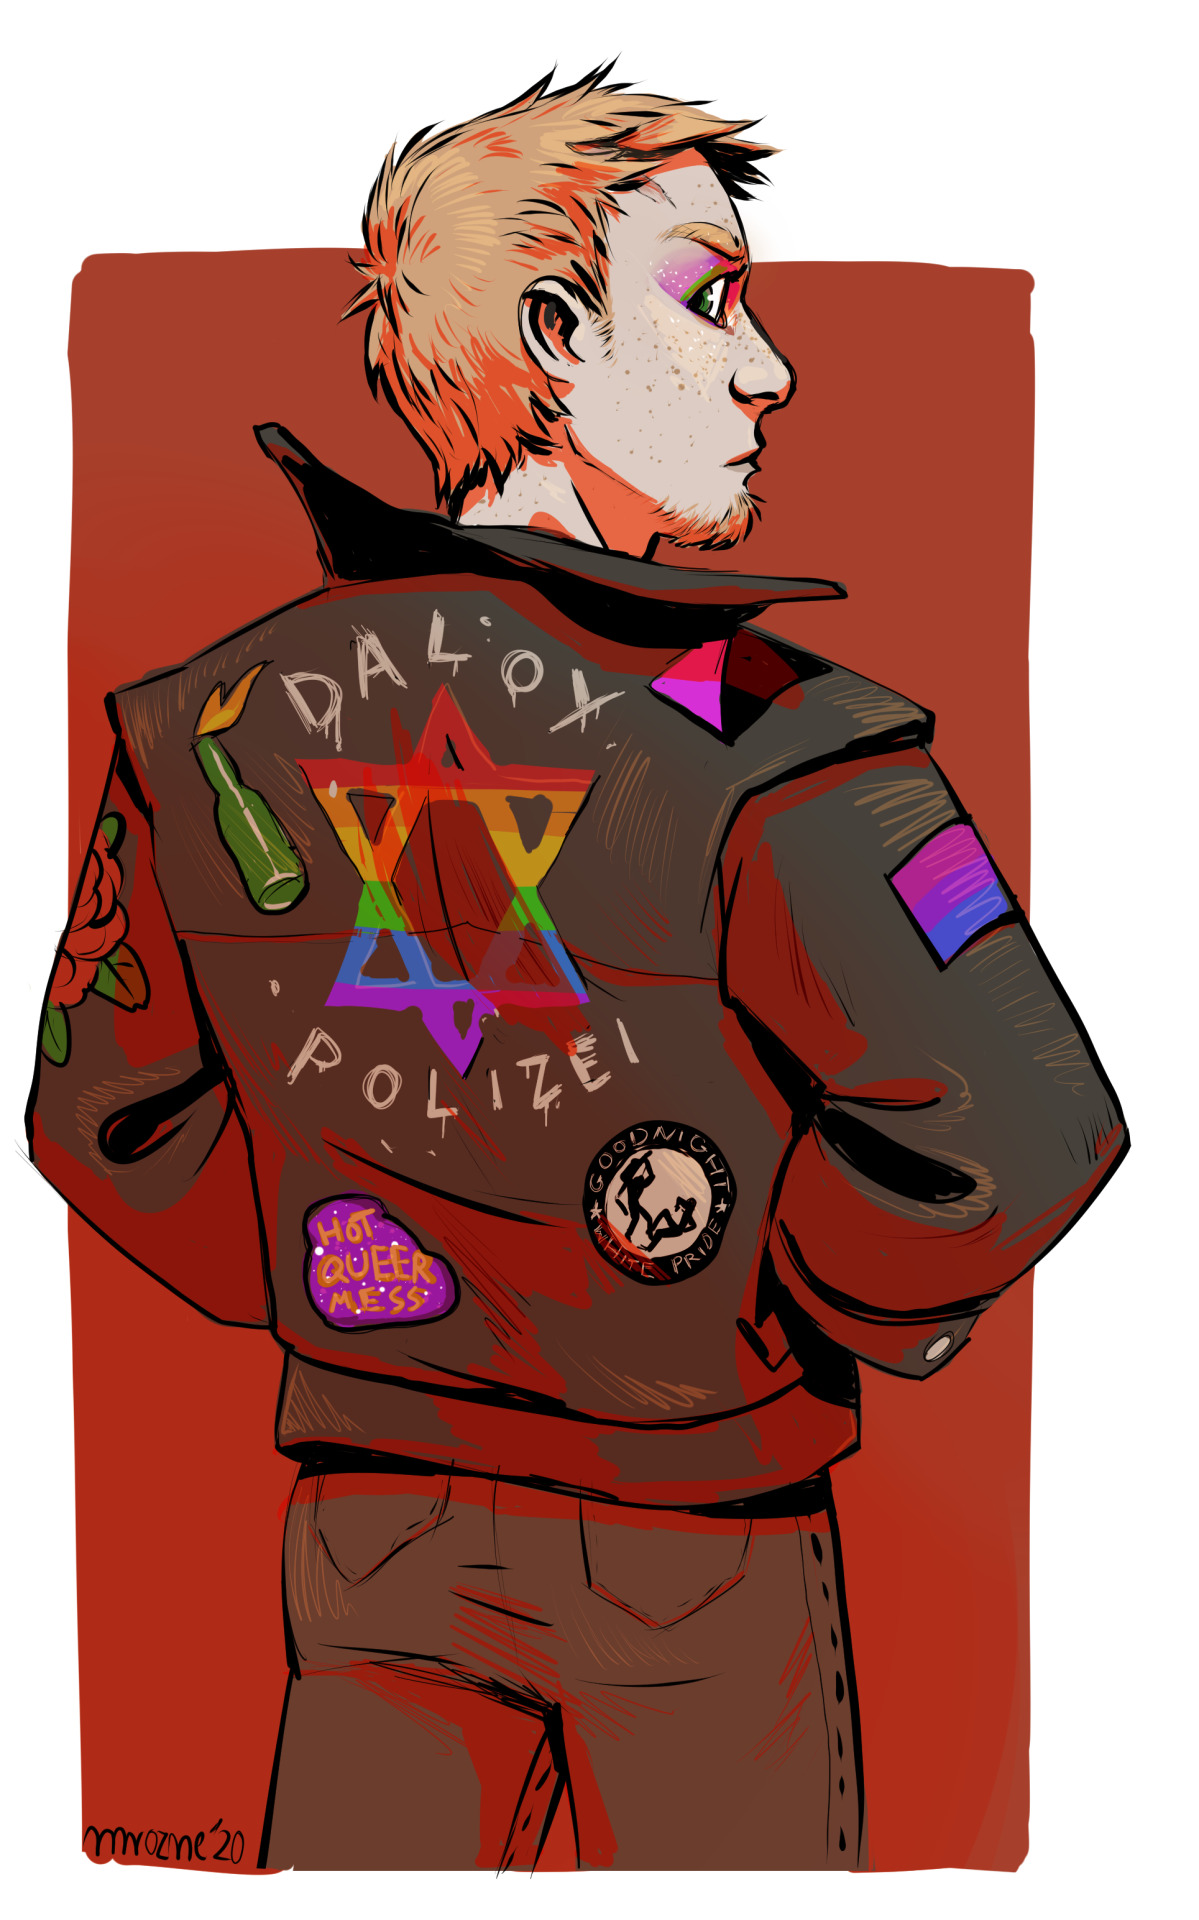 Hey, hey, daloy polizei!PatreonKo-fi #Mirek#Zmiej#queer anarchism#lgbt #artists on tumblr #digital art